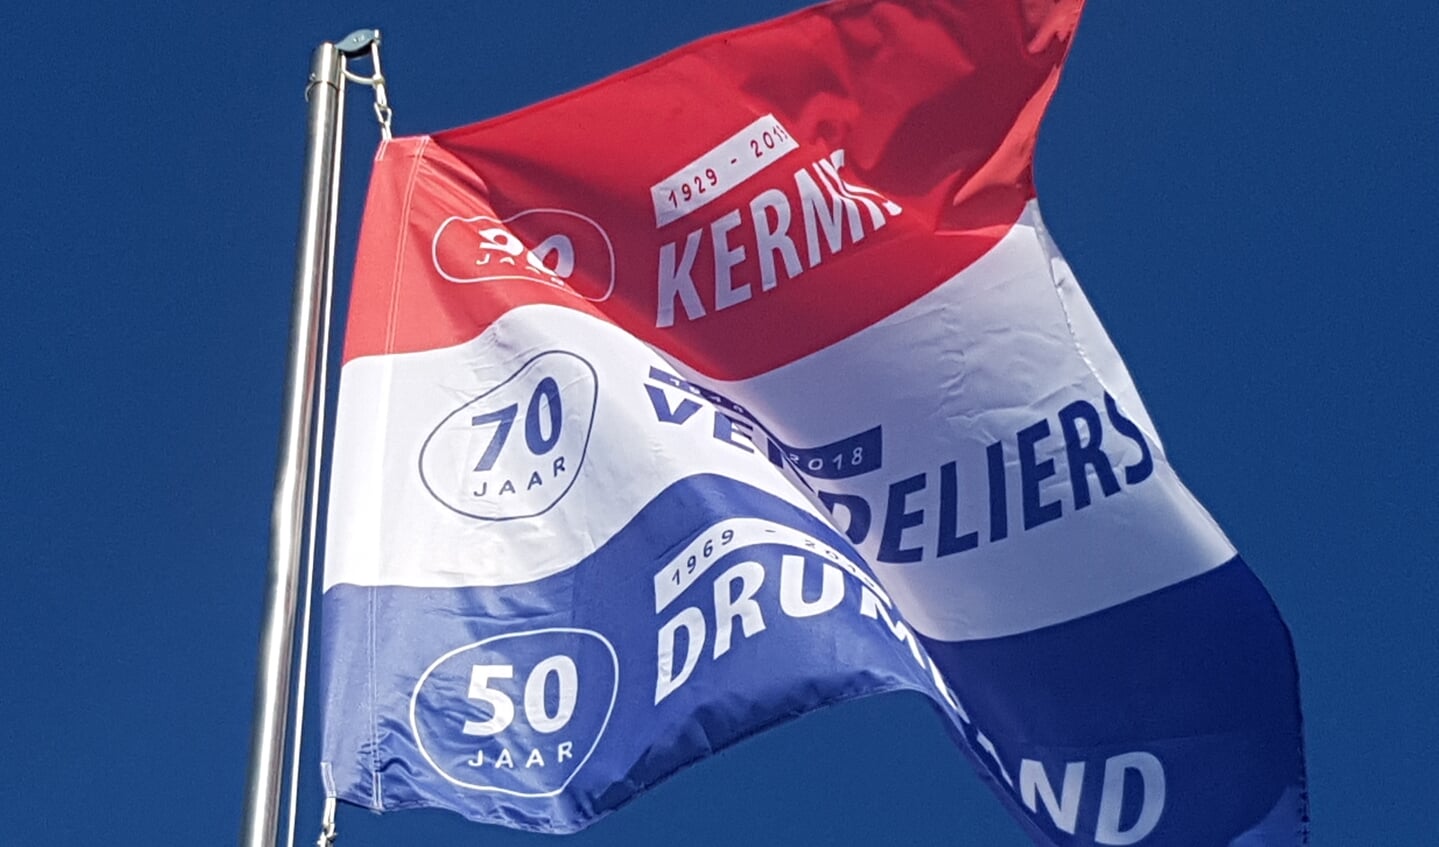 De speciaal ontworpen jubileumvlag wappert boven het kermisterrein in Lievelde. 